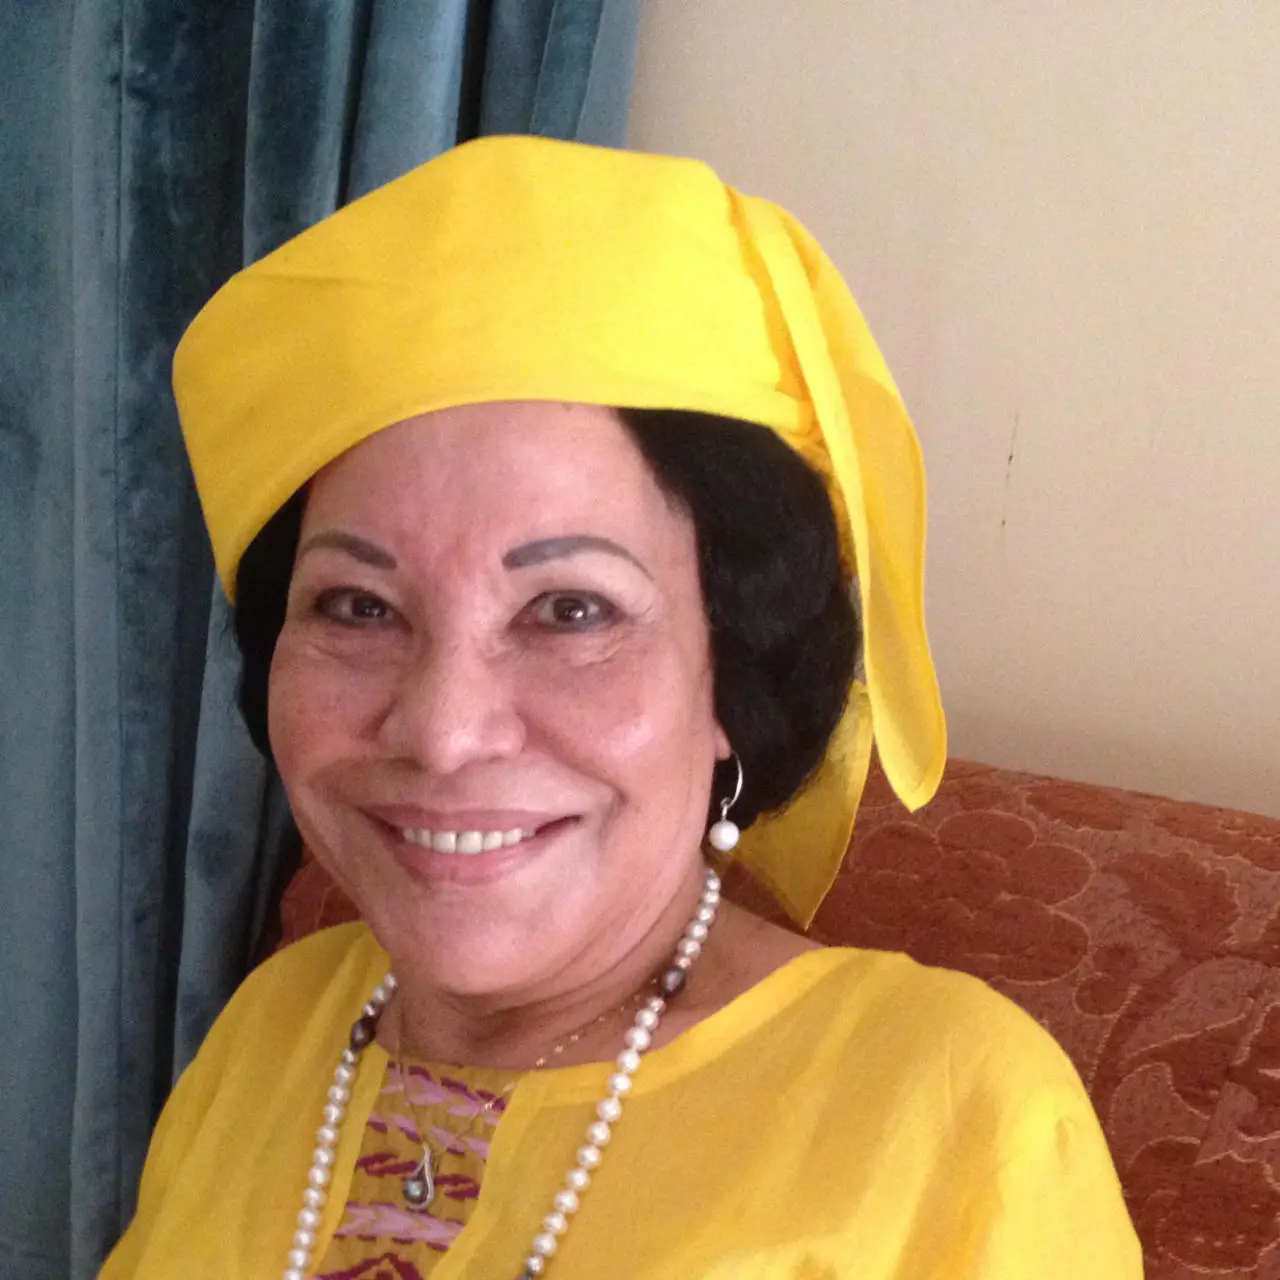 Cameroun : Décès de l’ex-Première dame Mme Germaine Ahidjo